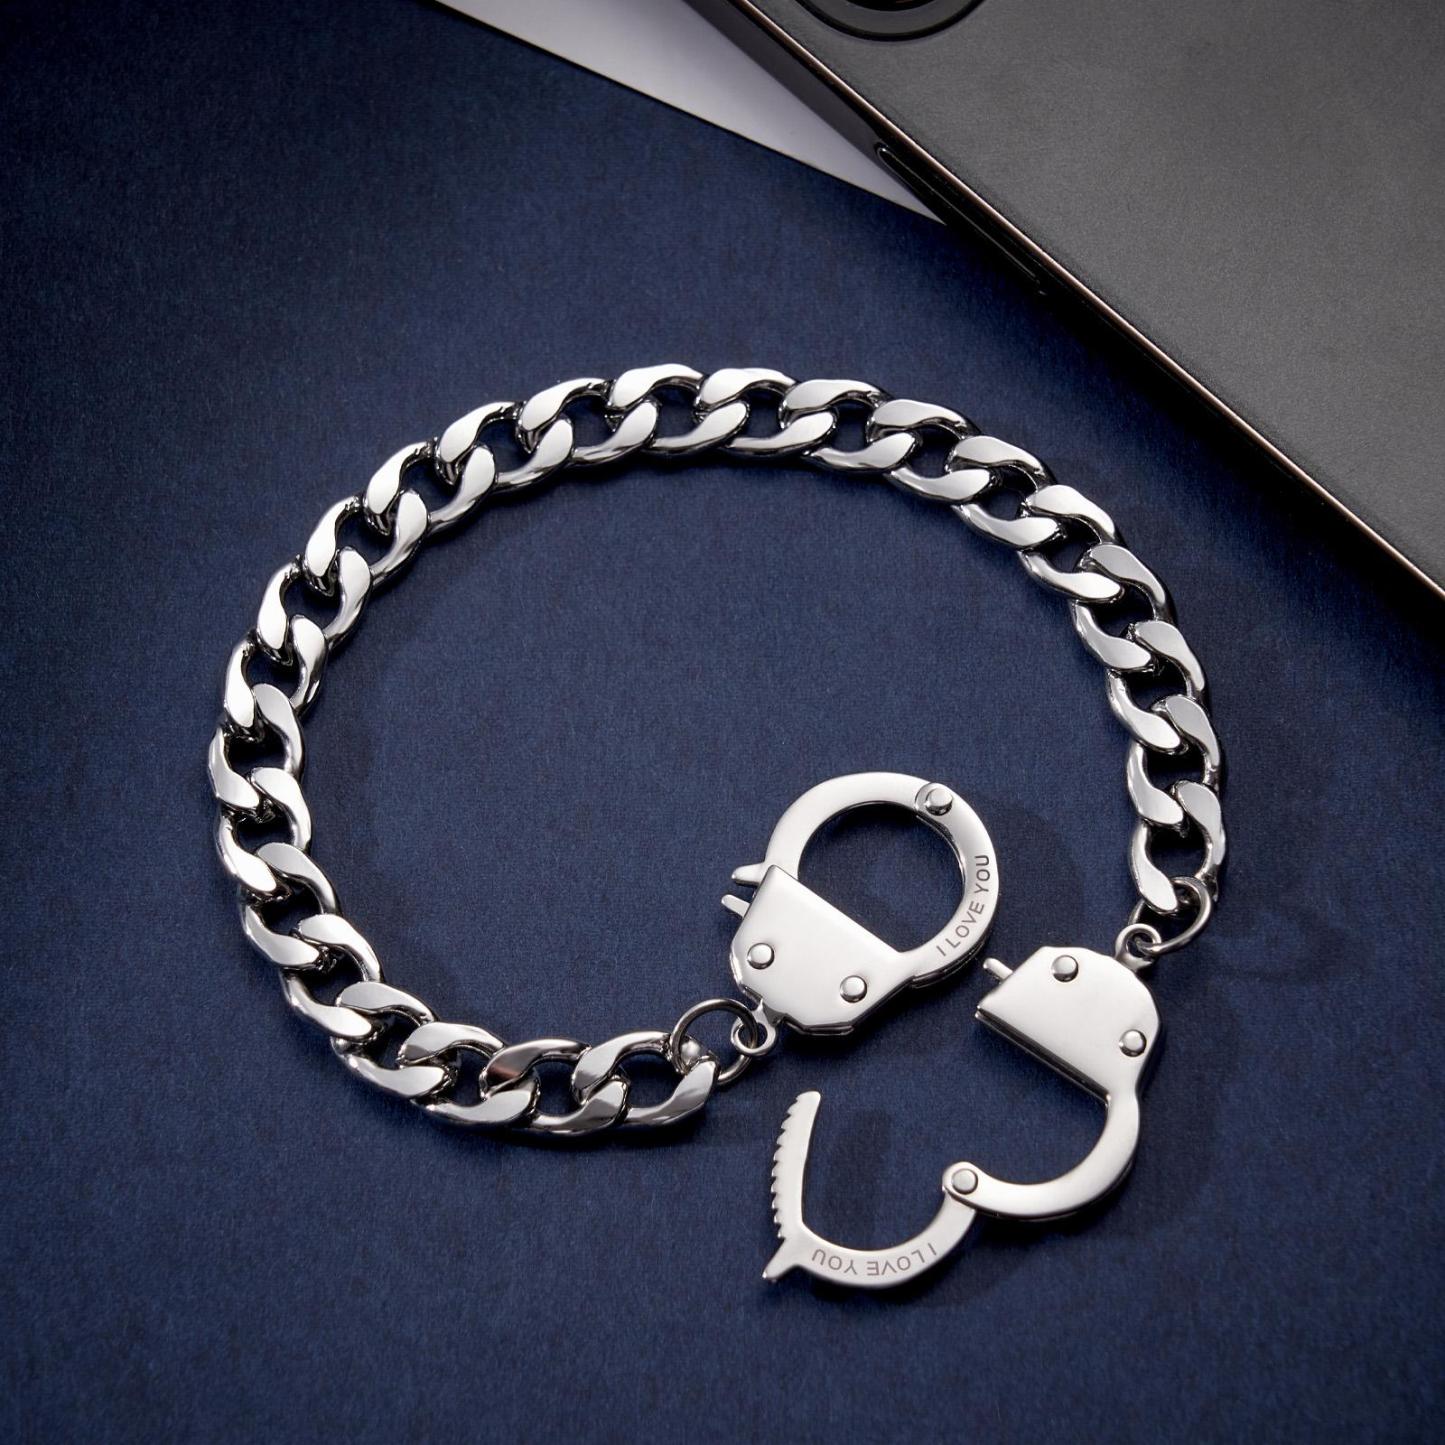 Handcuffs Engraved Bracelet Personalized Unique Shackle Chain Bracelet For Couples - soufeelus